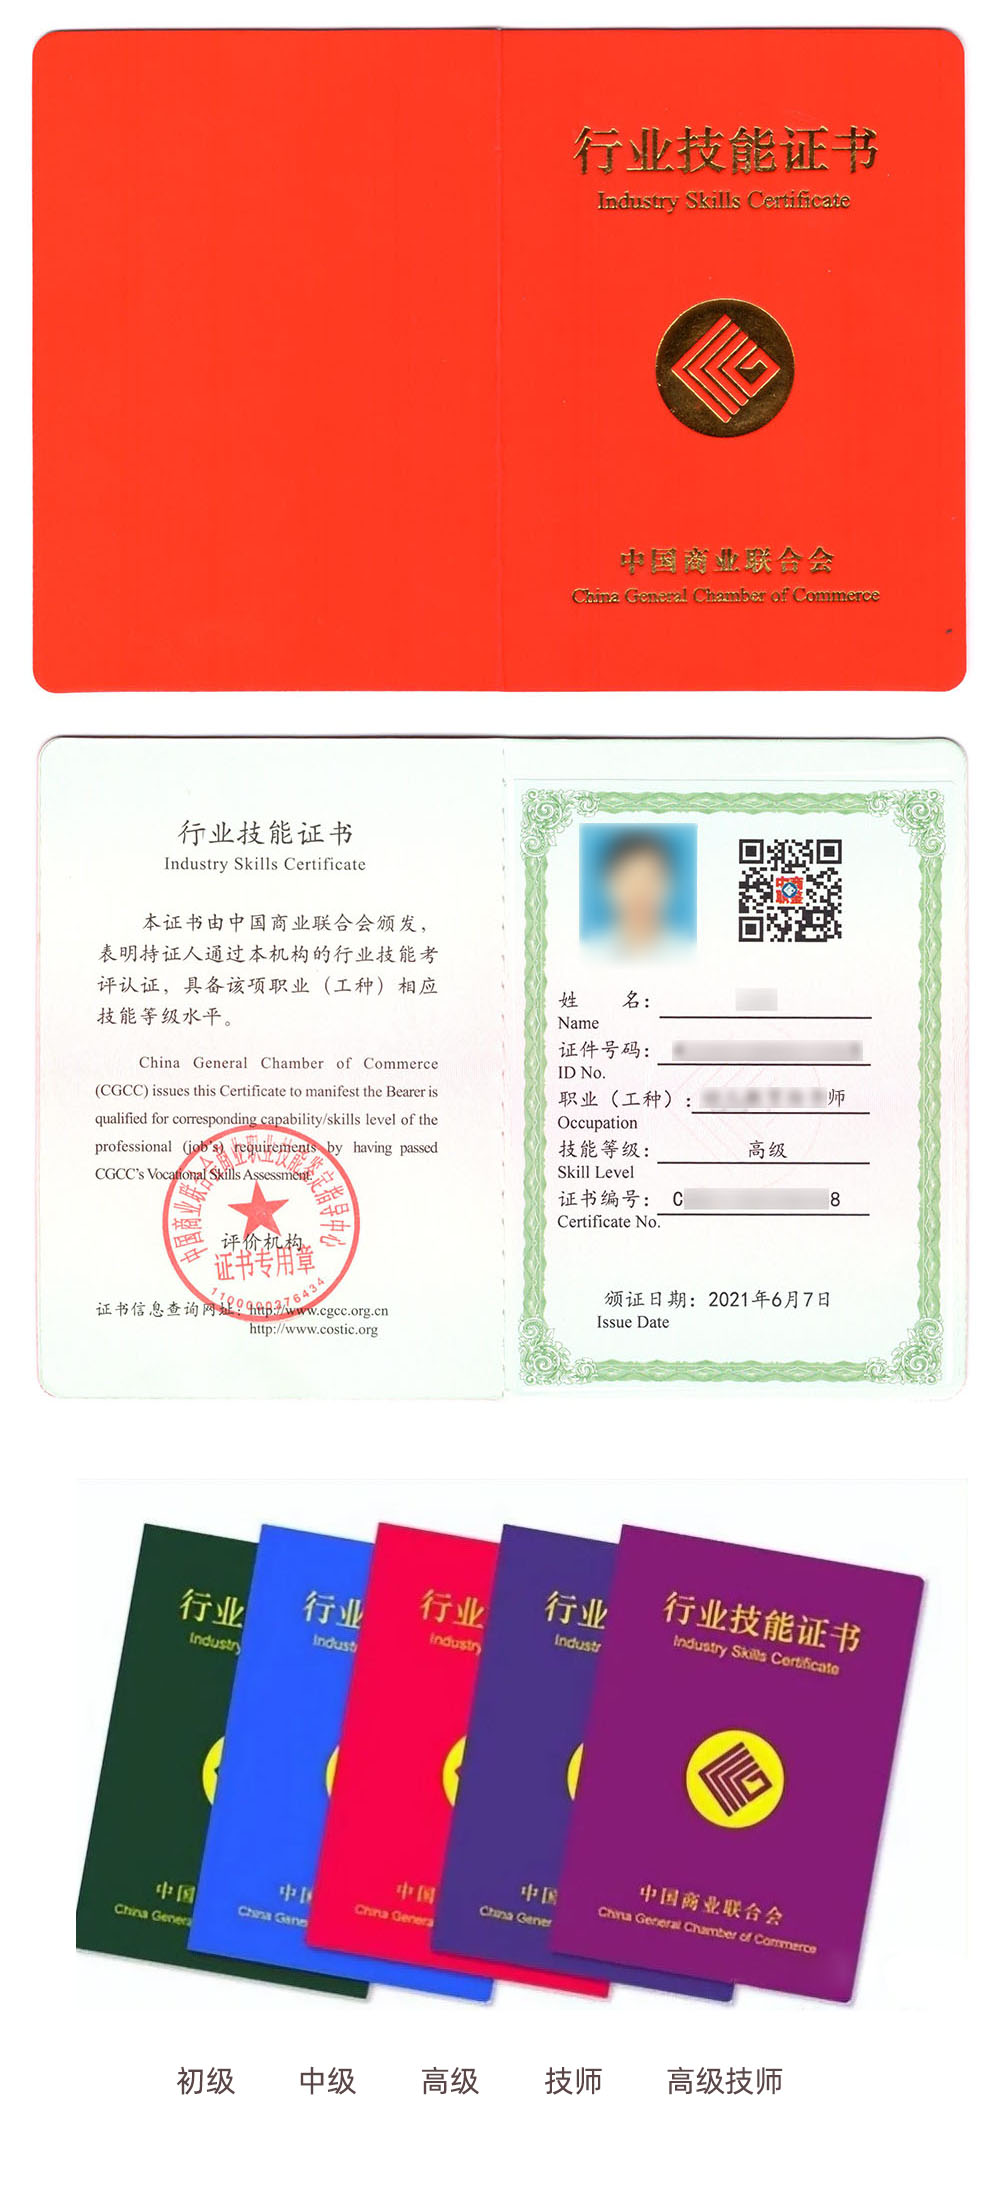 中国商业联合会商业职业技能鉴定中心 行业技能证书 社群指导师证证书样本